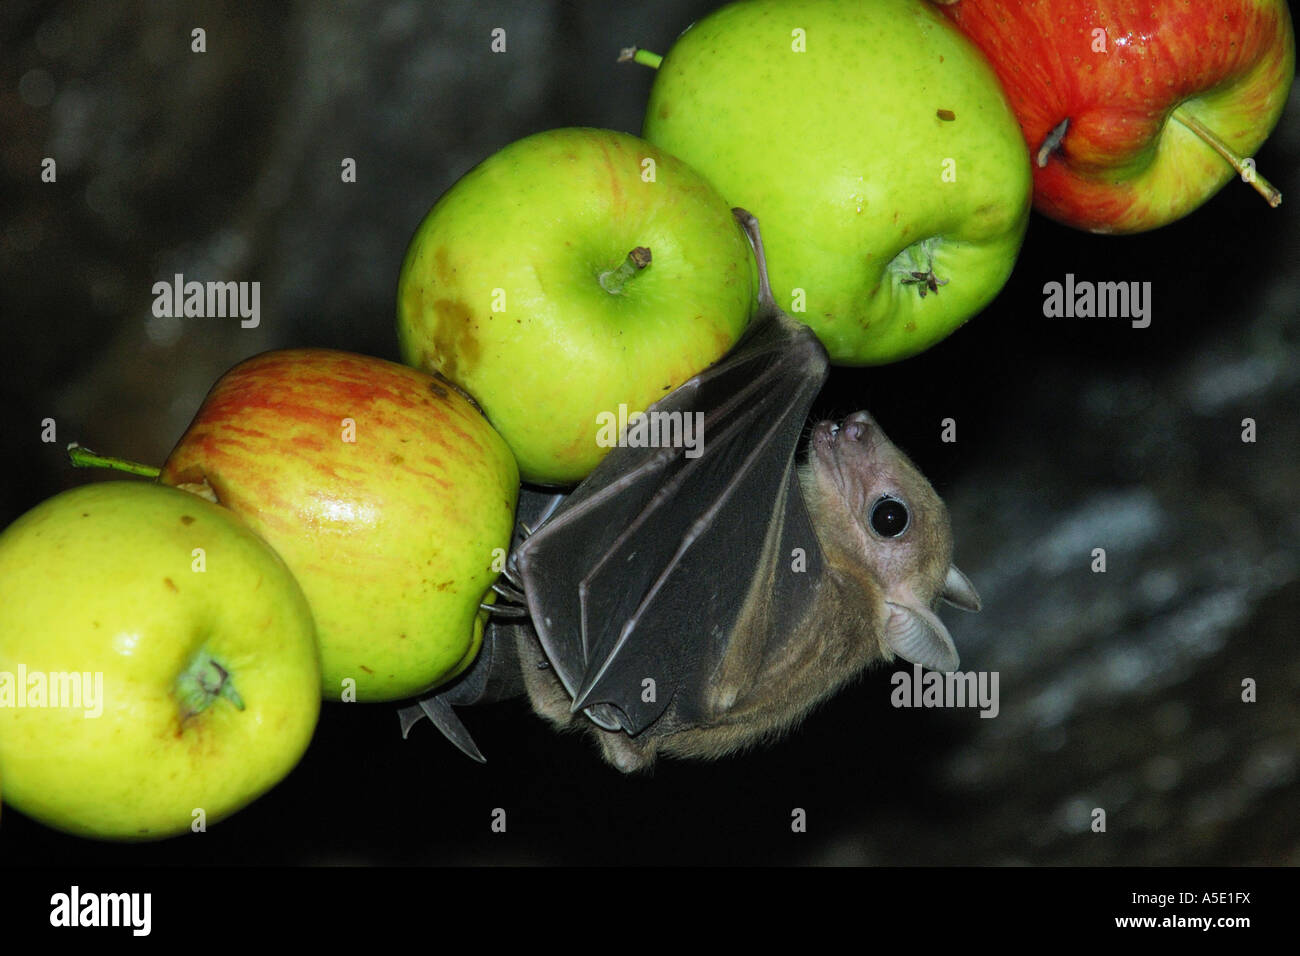 Egyptian rousette, Egyptian Fruit Bat (Rousettus aegyptiacus, Rousettus aegypticus), single animal on pierced apples Stock Photo